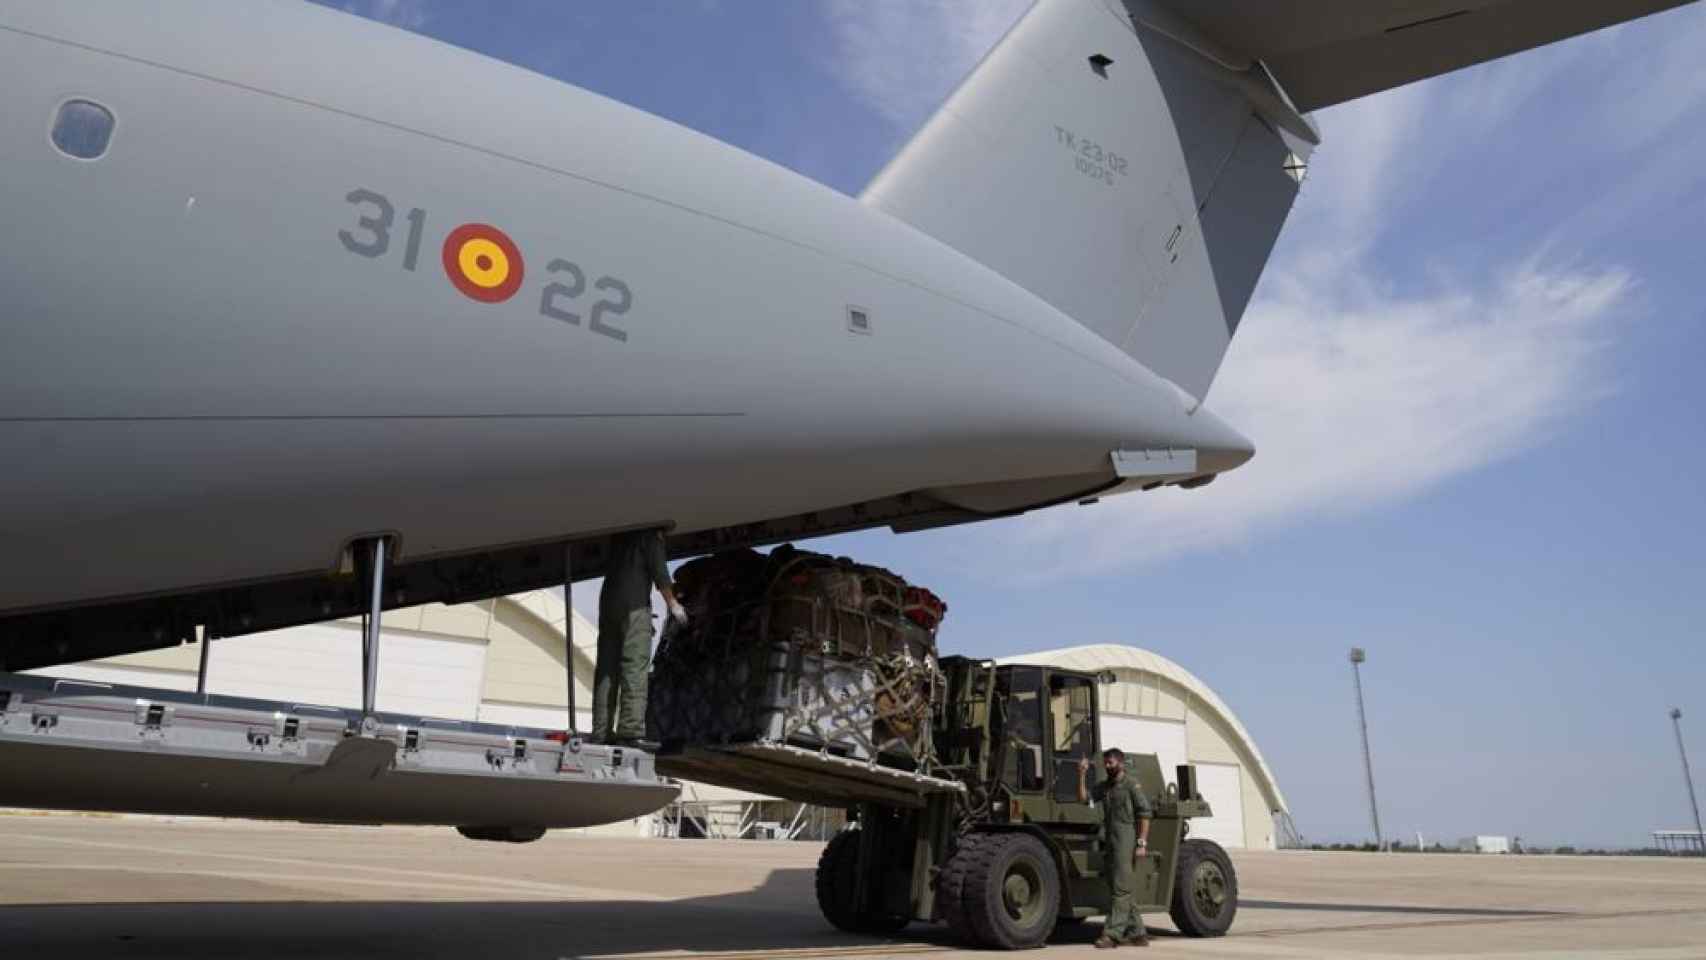 Dos militares cargan el cuarto avión que viajará a Dubái, en la base aérea de Zaragoza.